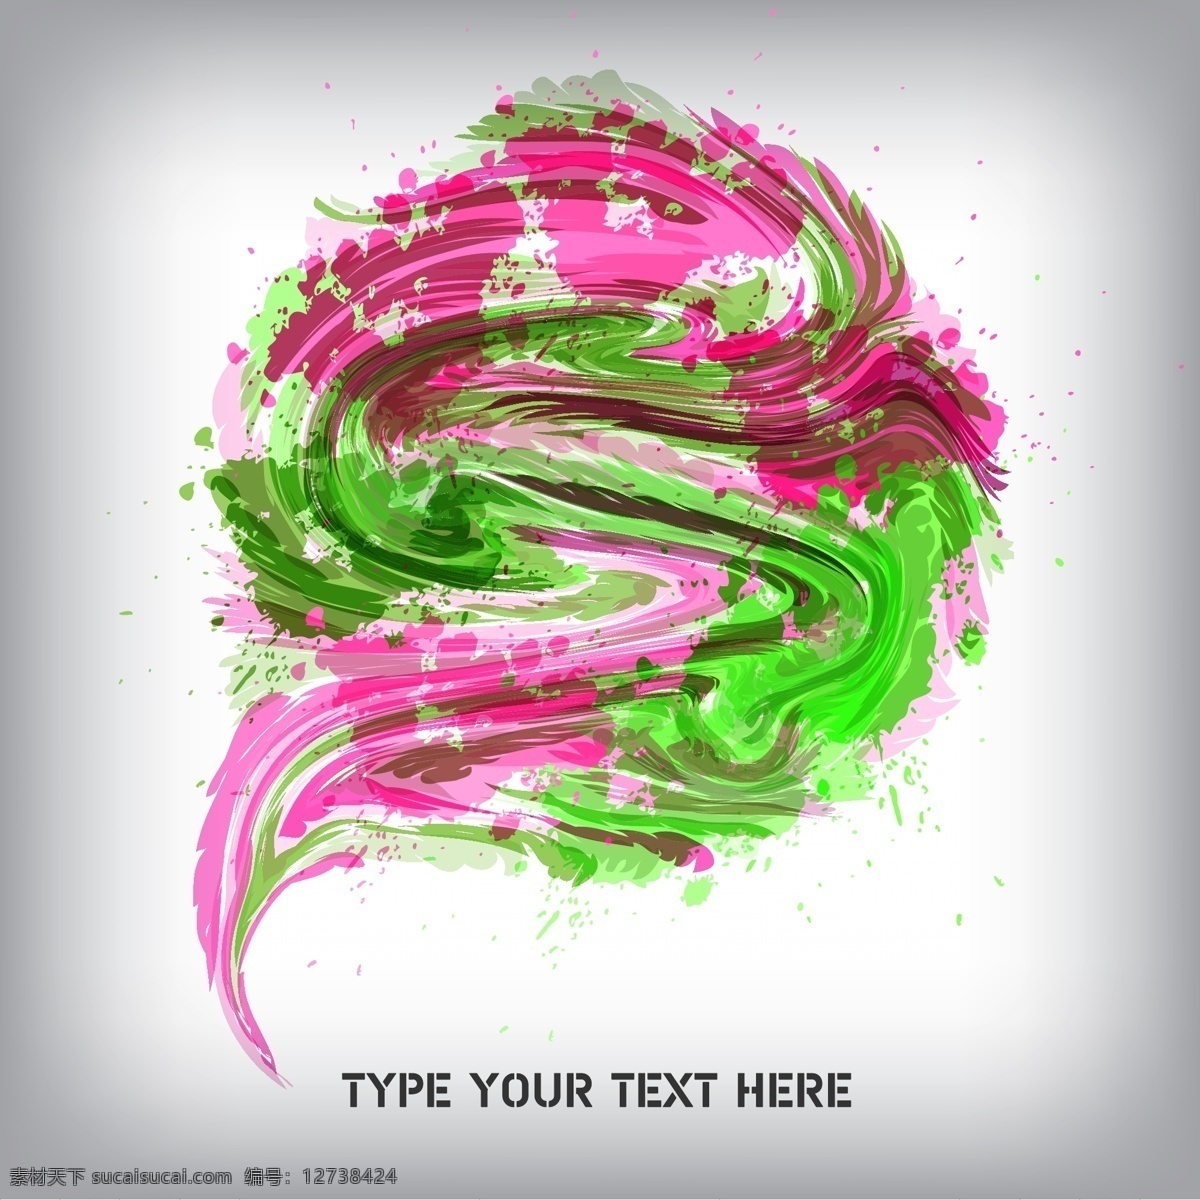 炫 色 颜料 图案 背景 矢量 web 插画 创意 粉红色的 绿 免费 图形 病 媒 生物 时尚 独特的 原始的 高质量 质量 新鲜的 设计油漆漩涡 油漆颜料 摘要 油漆 psd源文件